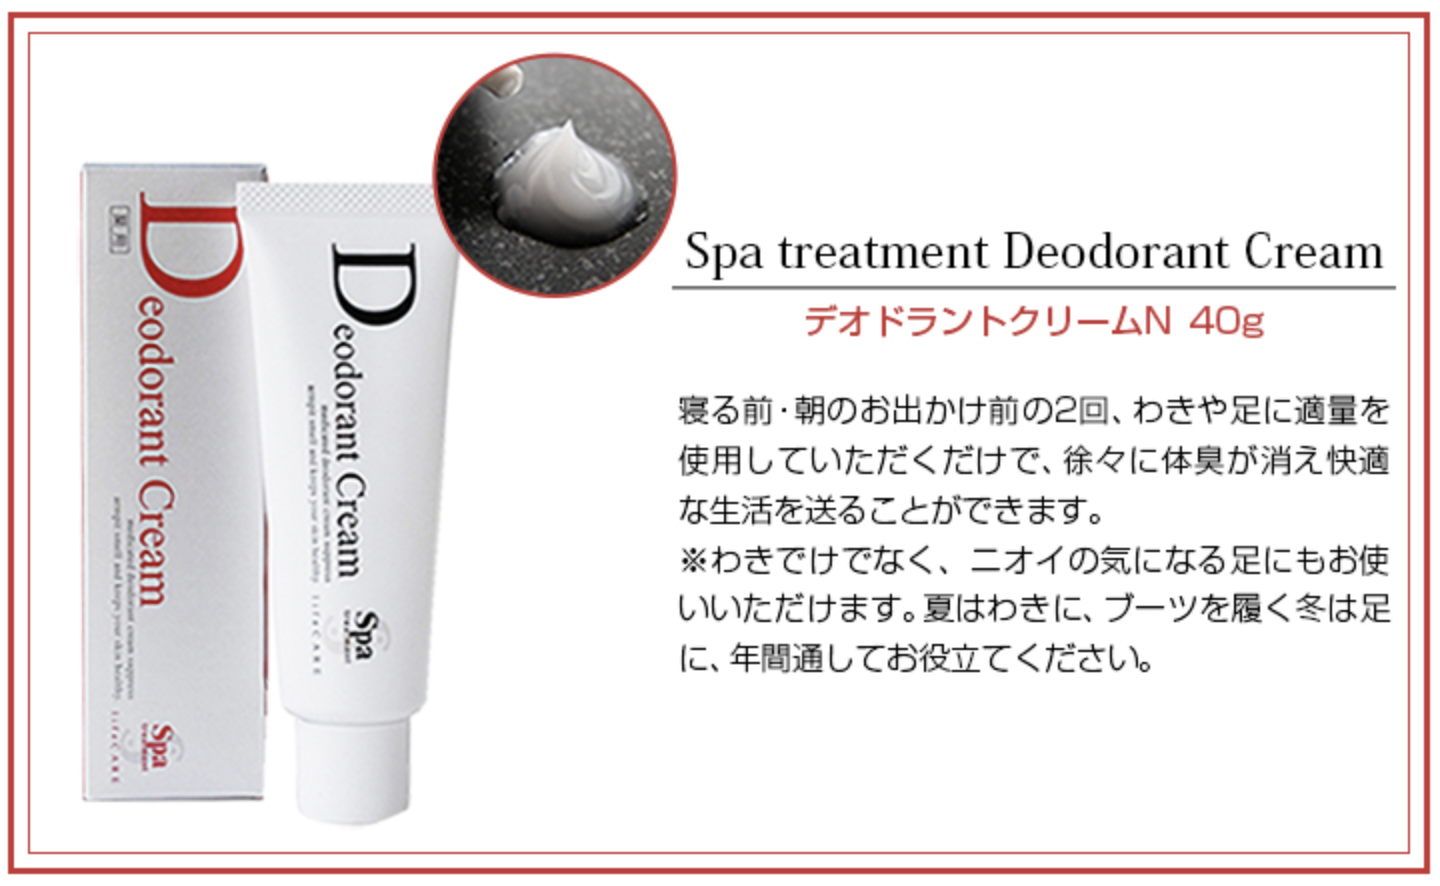 Deodorant Cream, 40g - SPA Treatment